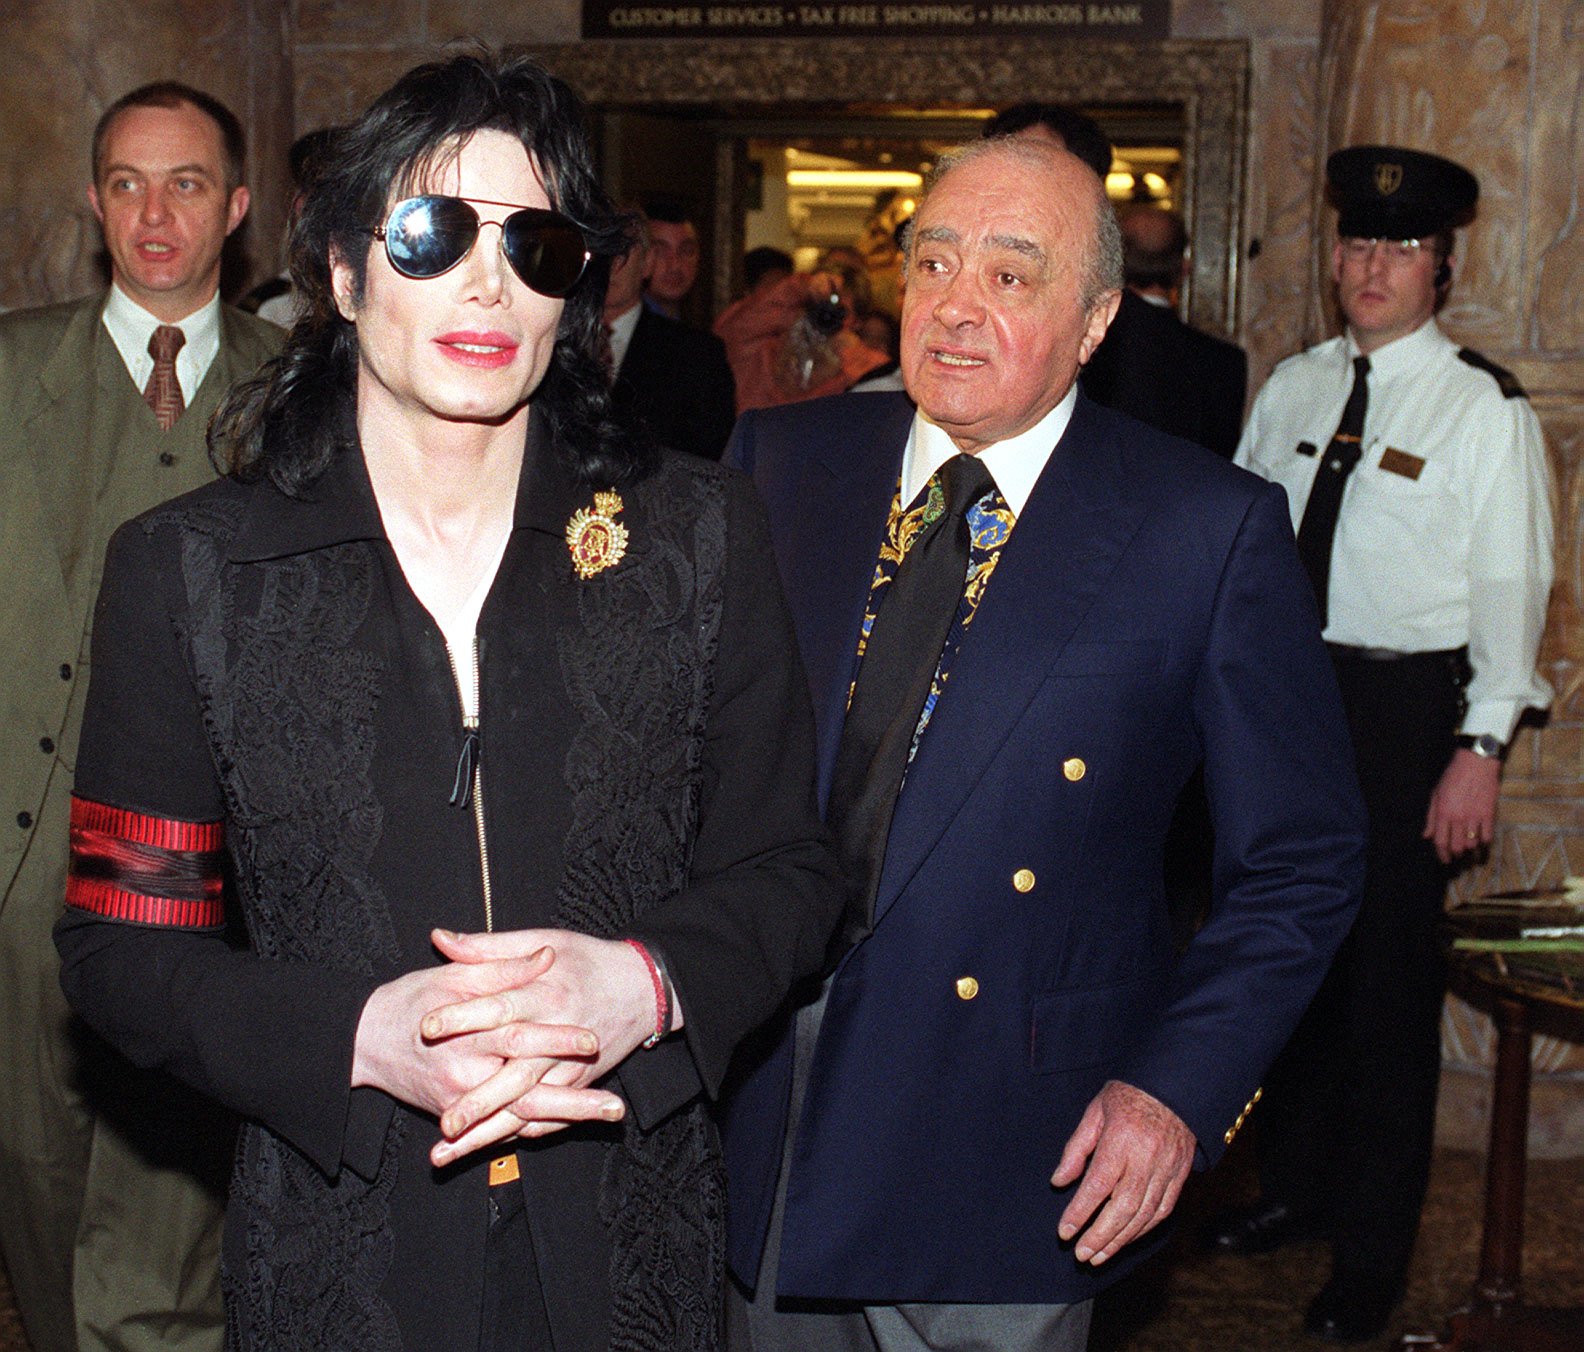 Piers‘ Freundschaft mit Fayed bescherte ihm einige der größten Erfolge seiner Karriere – darunter ein bombastisches Interview mit Michael Jackson